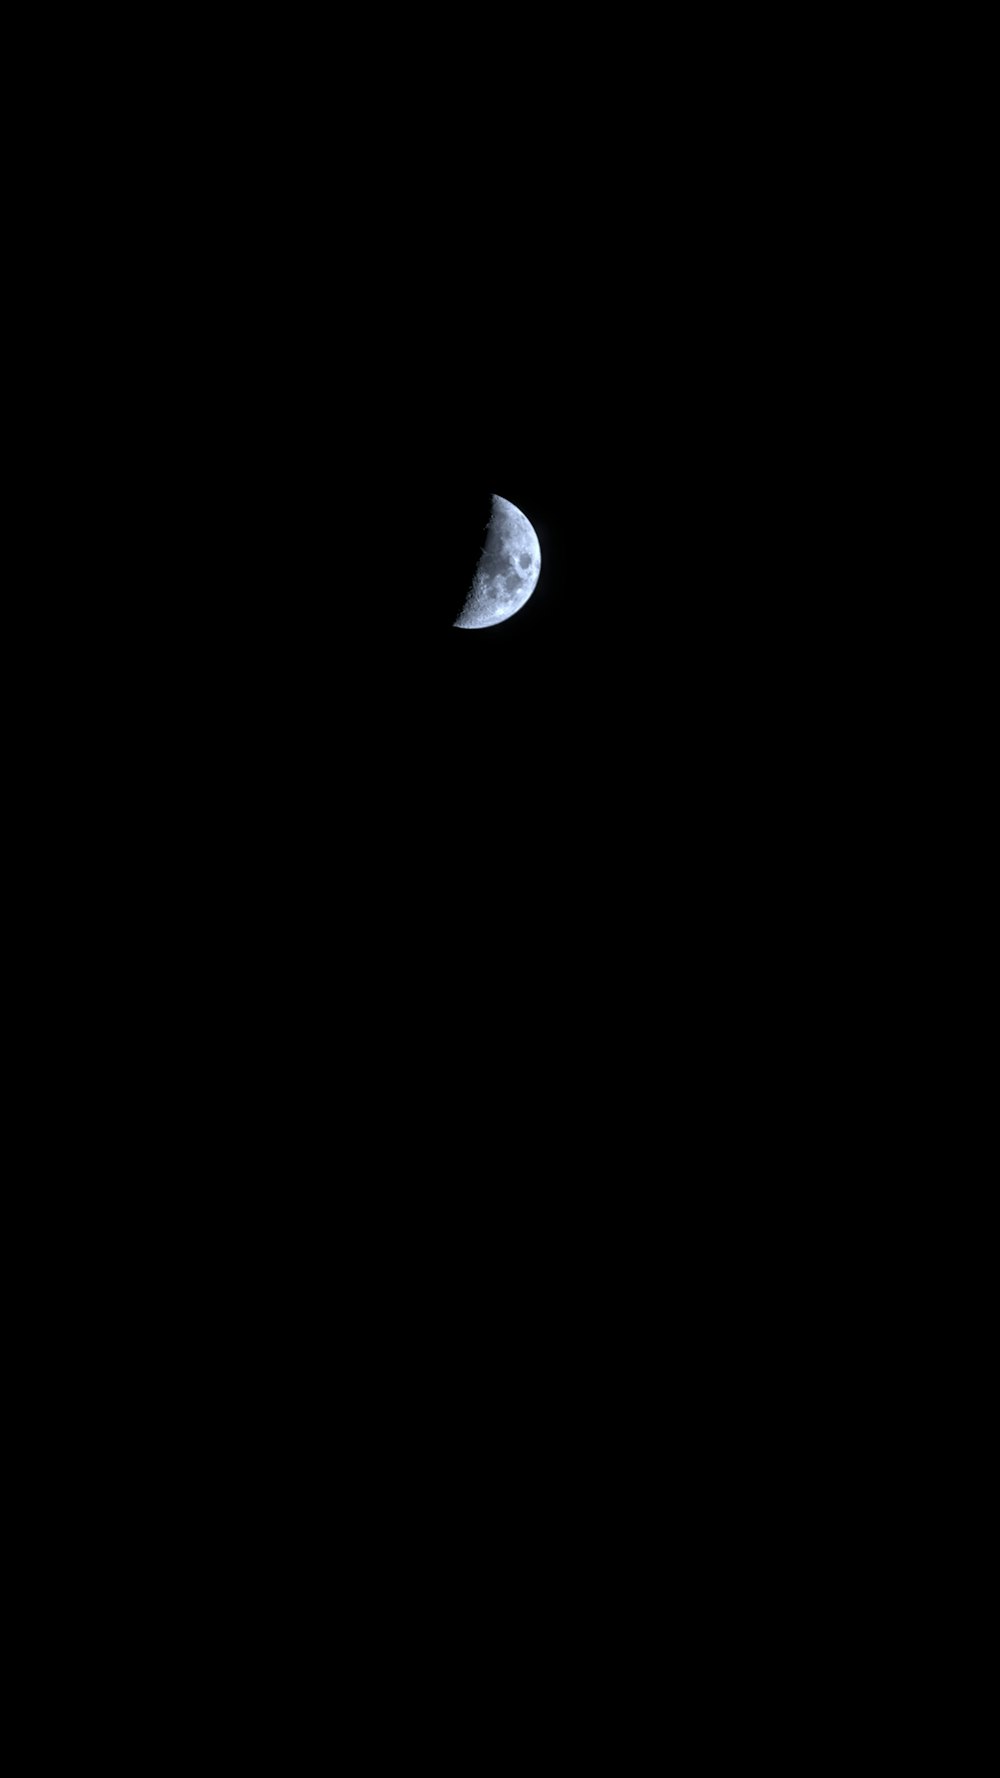 Foto Media luna blanca y negra – Imagen Noche gratis en Unsplash